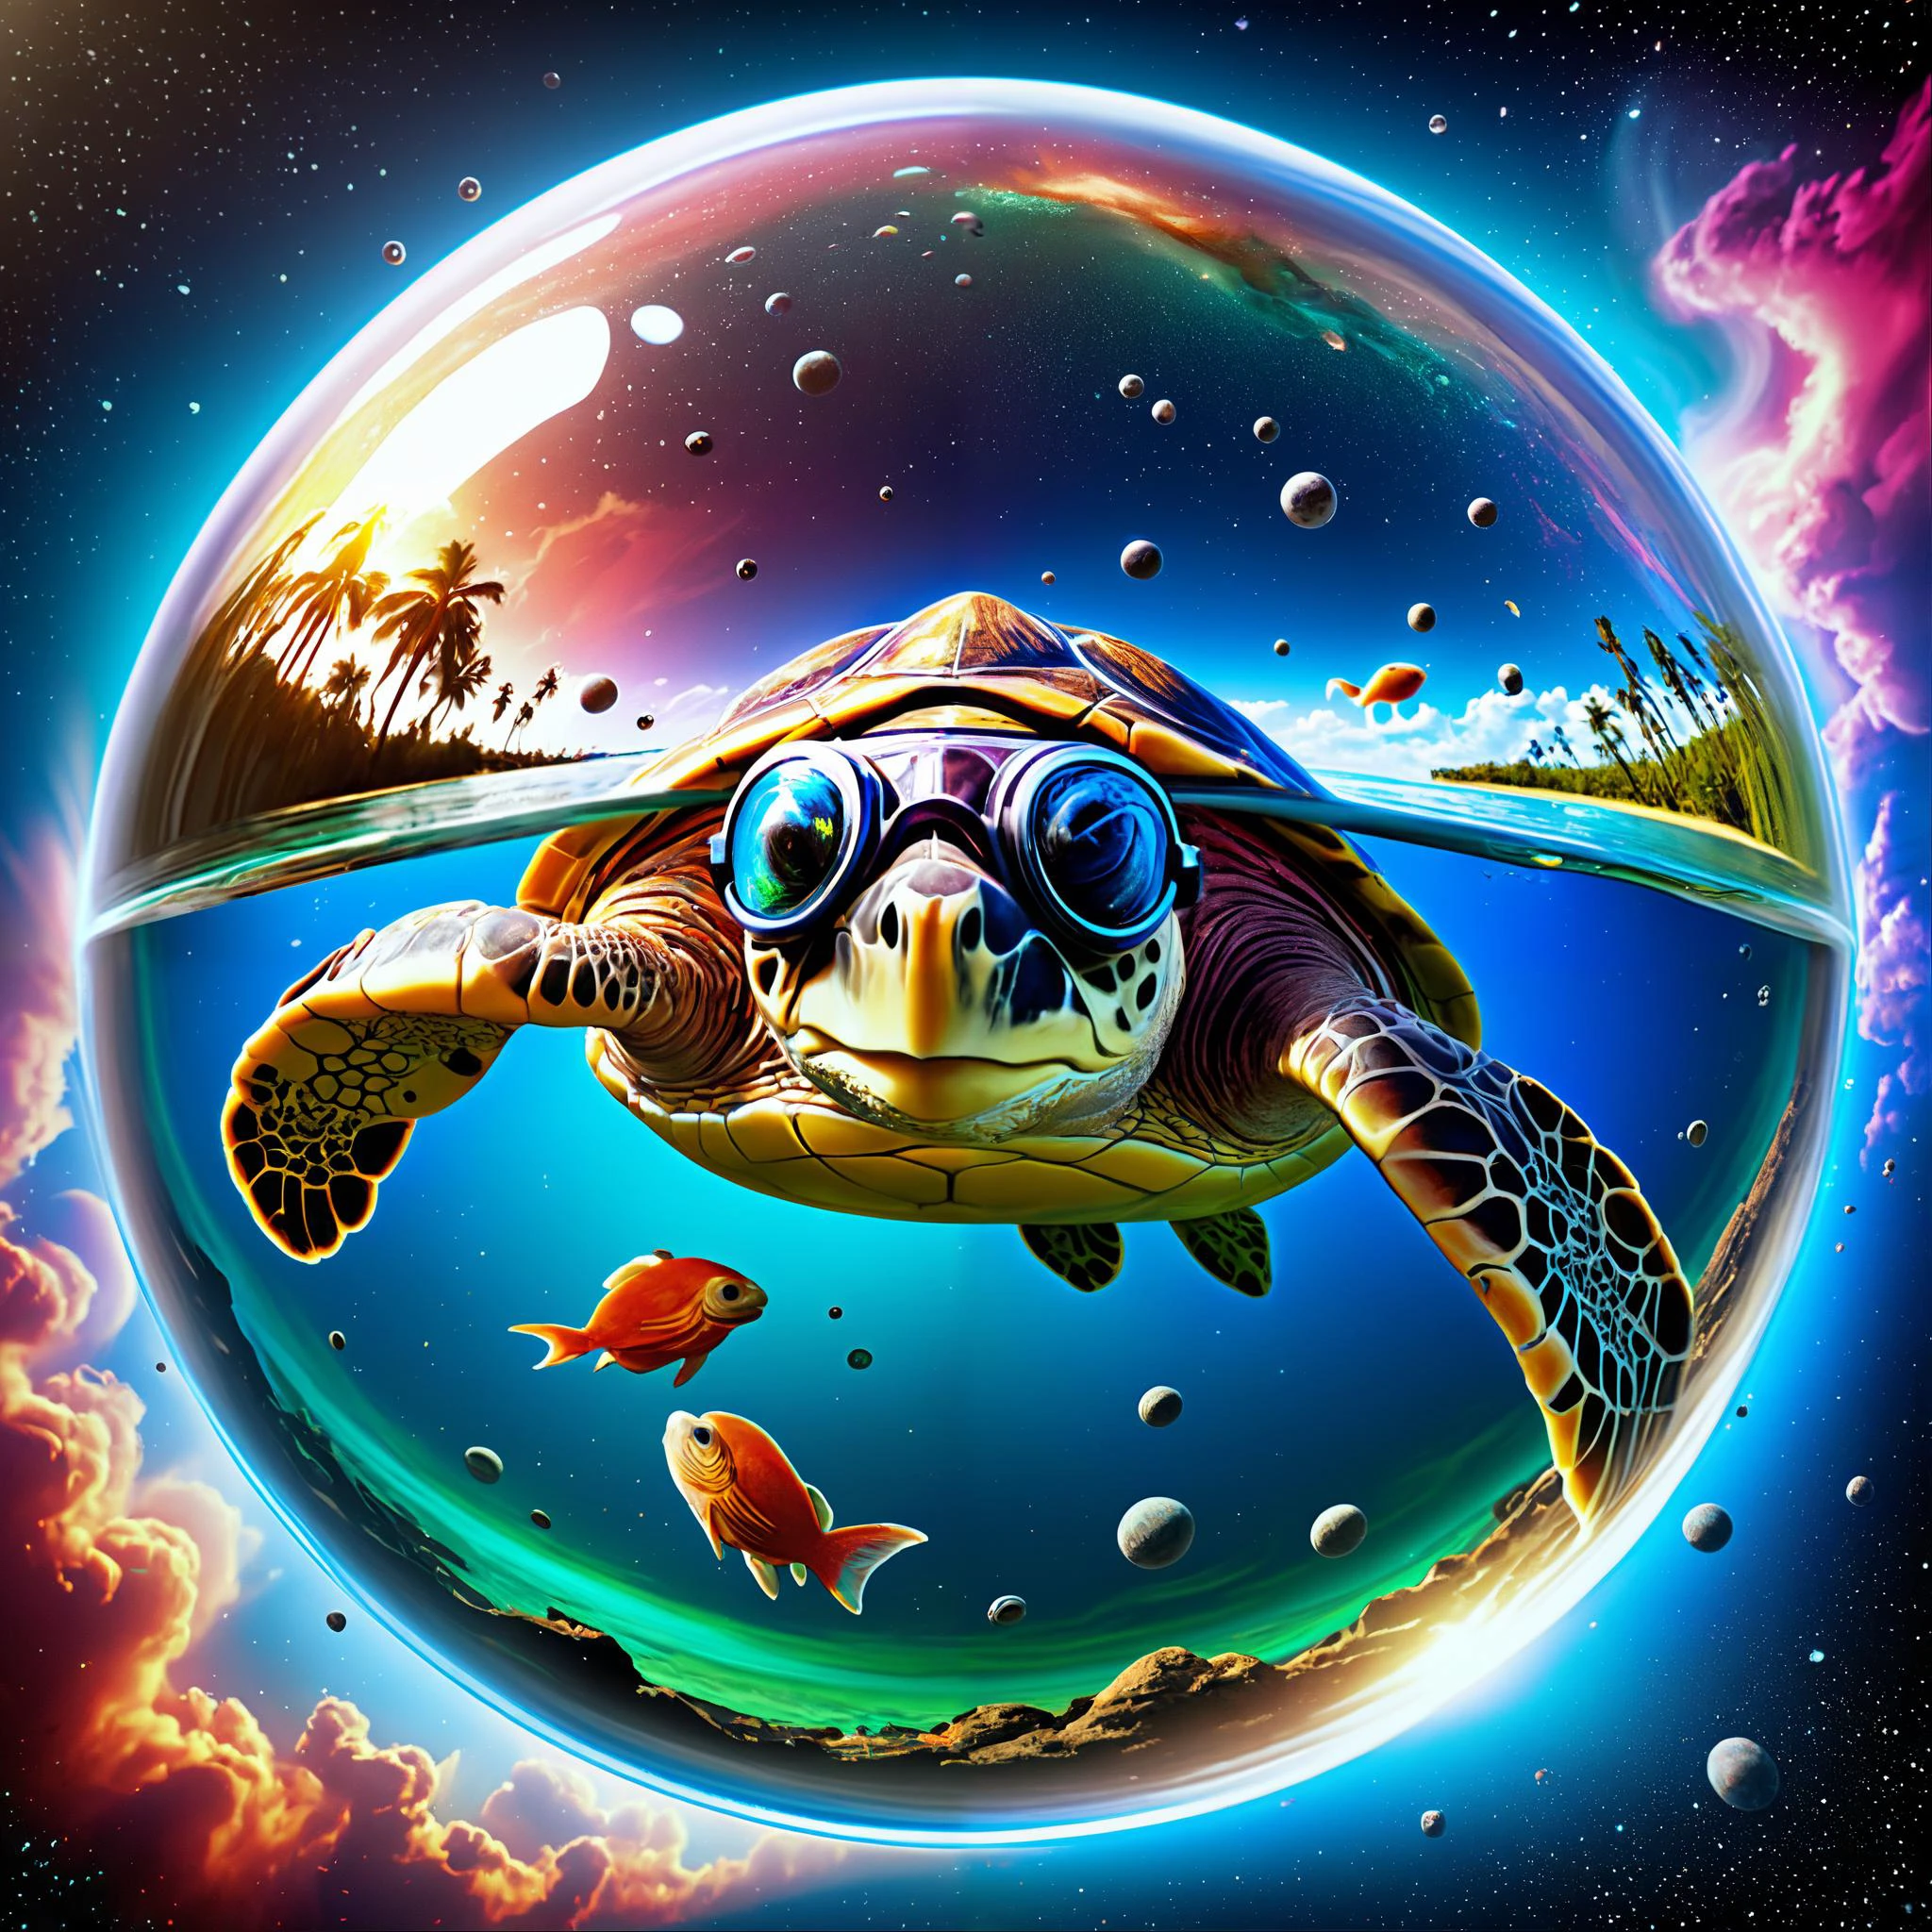 ojo de pez dentro de una burbuja, imagina una tortuga usando (reflejado_pilotos_gafas de protección:1.2) Nadando a través de una nebulosa como si el espacio fuera un océano., surrealism, estilo pixar, altamente_detalleed_texturas, Intrincado_detalle, Exquisito_colorante, regla_de_tercios